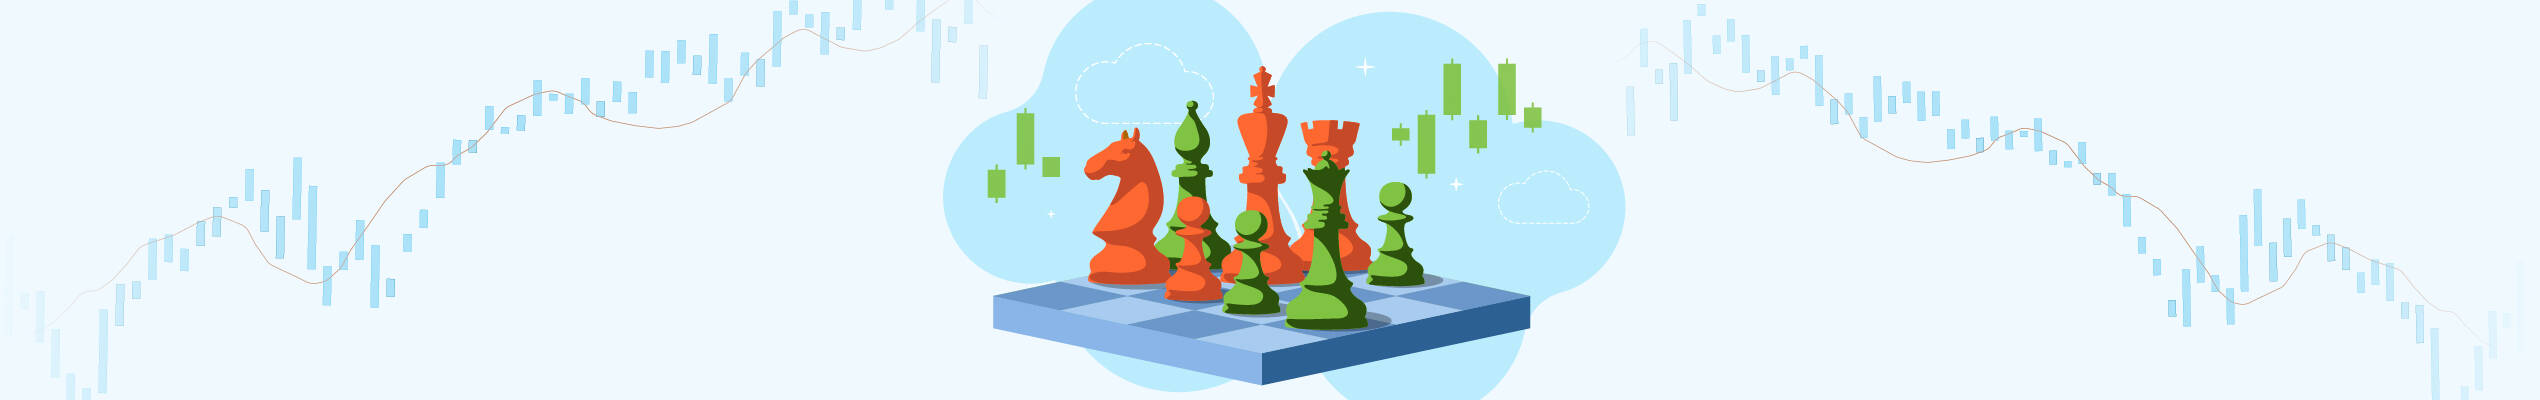 Estrategia Gambit: balance de riesgo y ganancia